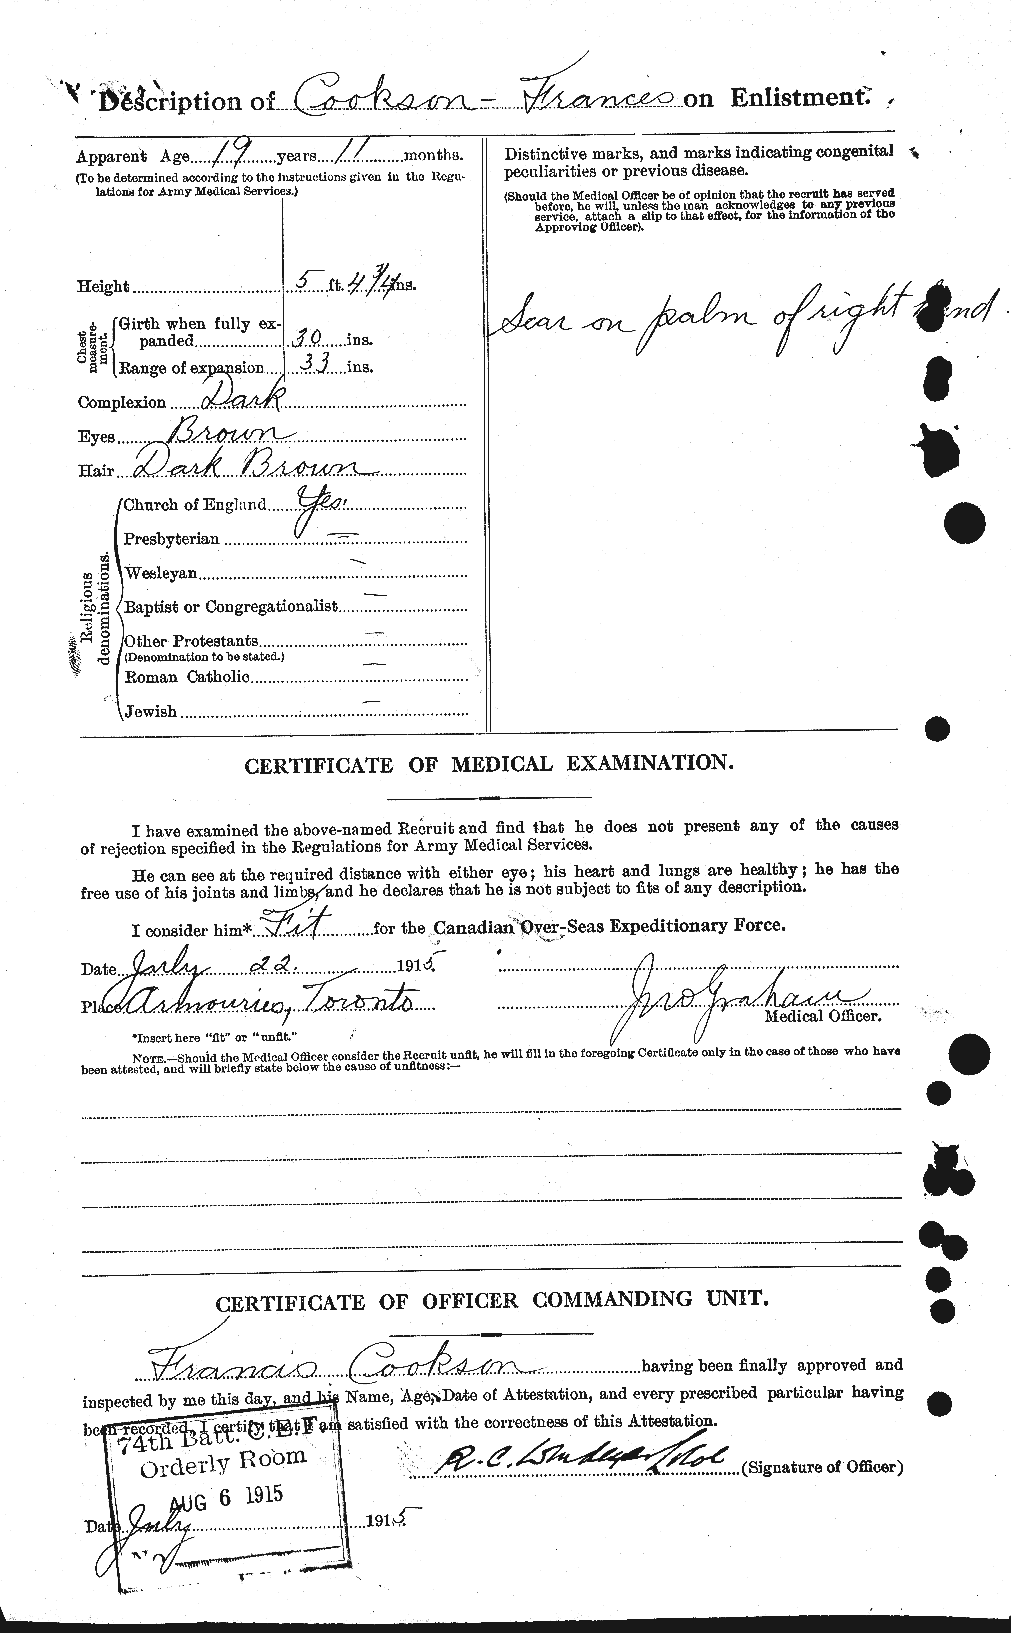 Dossiers du Personnel de la Première Guerre mondiale - CEC 056760b